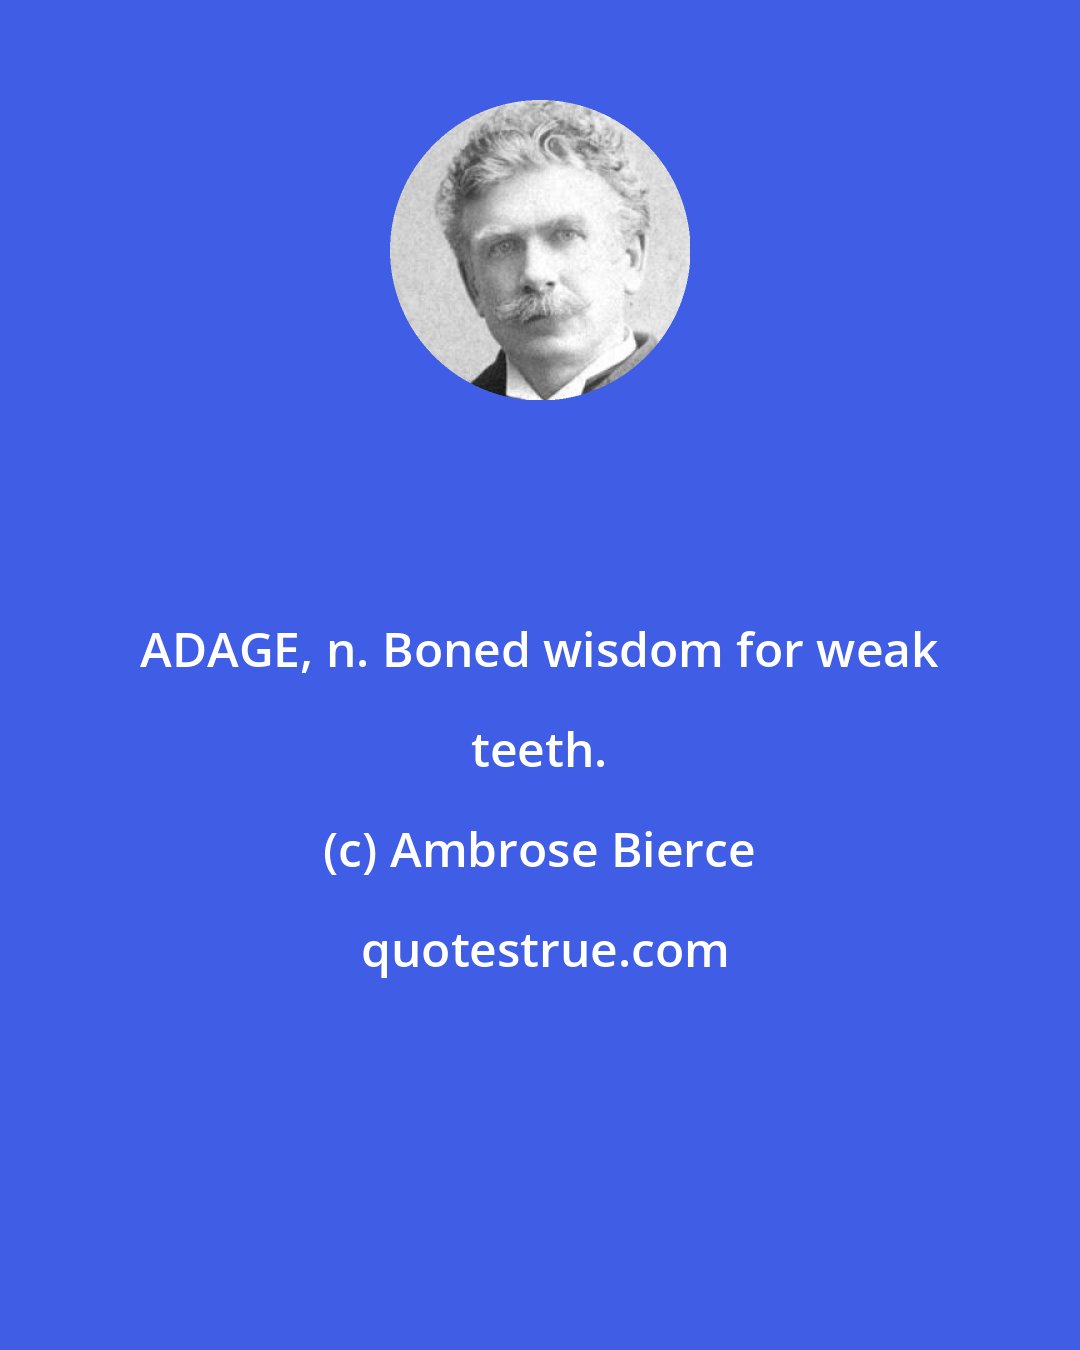 Ambrose Bierce: ADAGE, n. Boned wisdom for weak teeth.